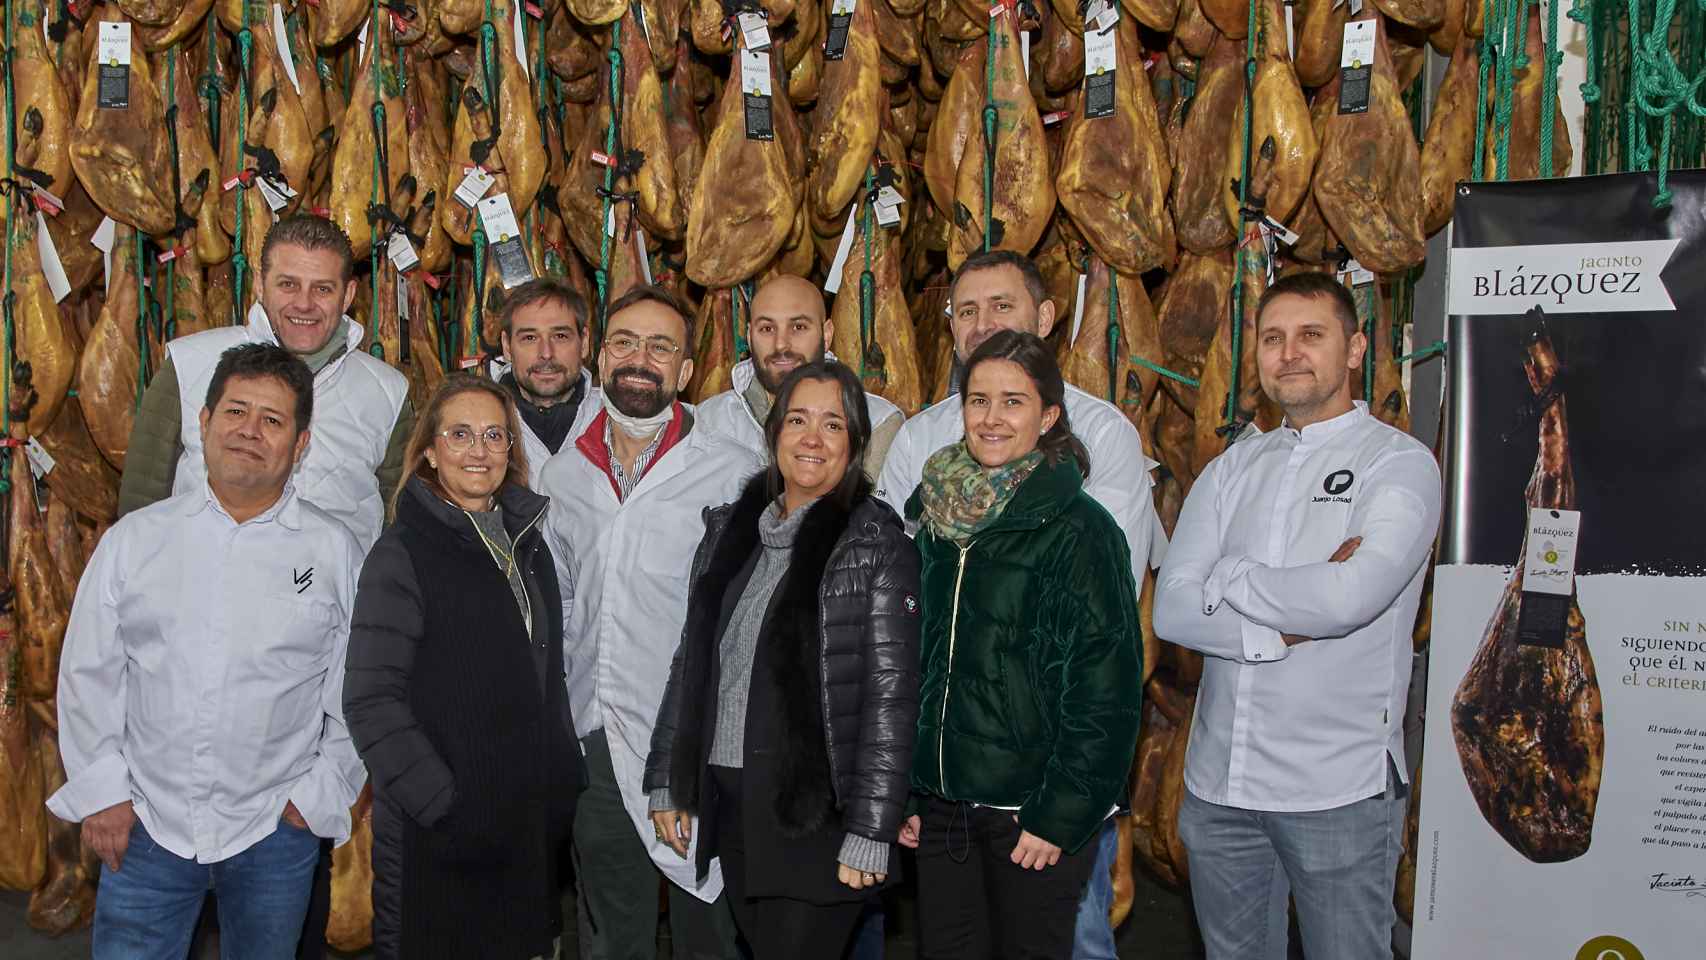 La familia Blázquez con los cinco chefs Estrellas Michelin, durante la visita en Crespos.